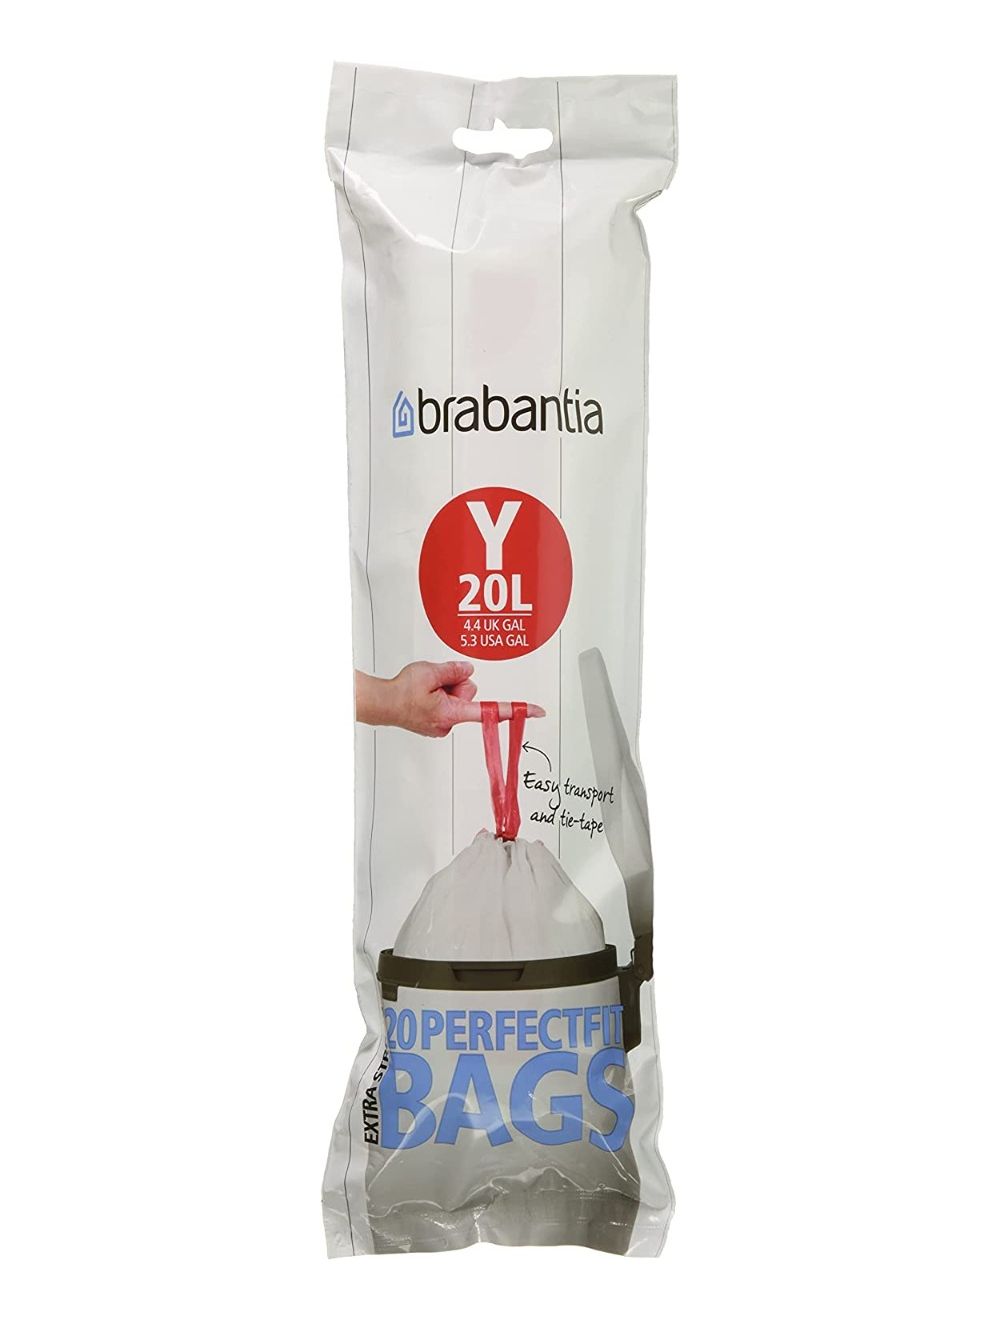 Brabantia PerfectFit Bin Liner Bags 20L Code Y - 20 Pack